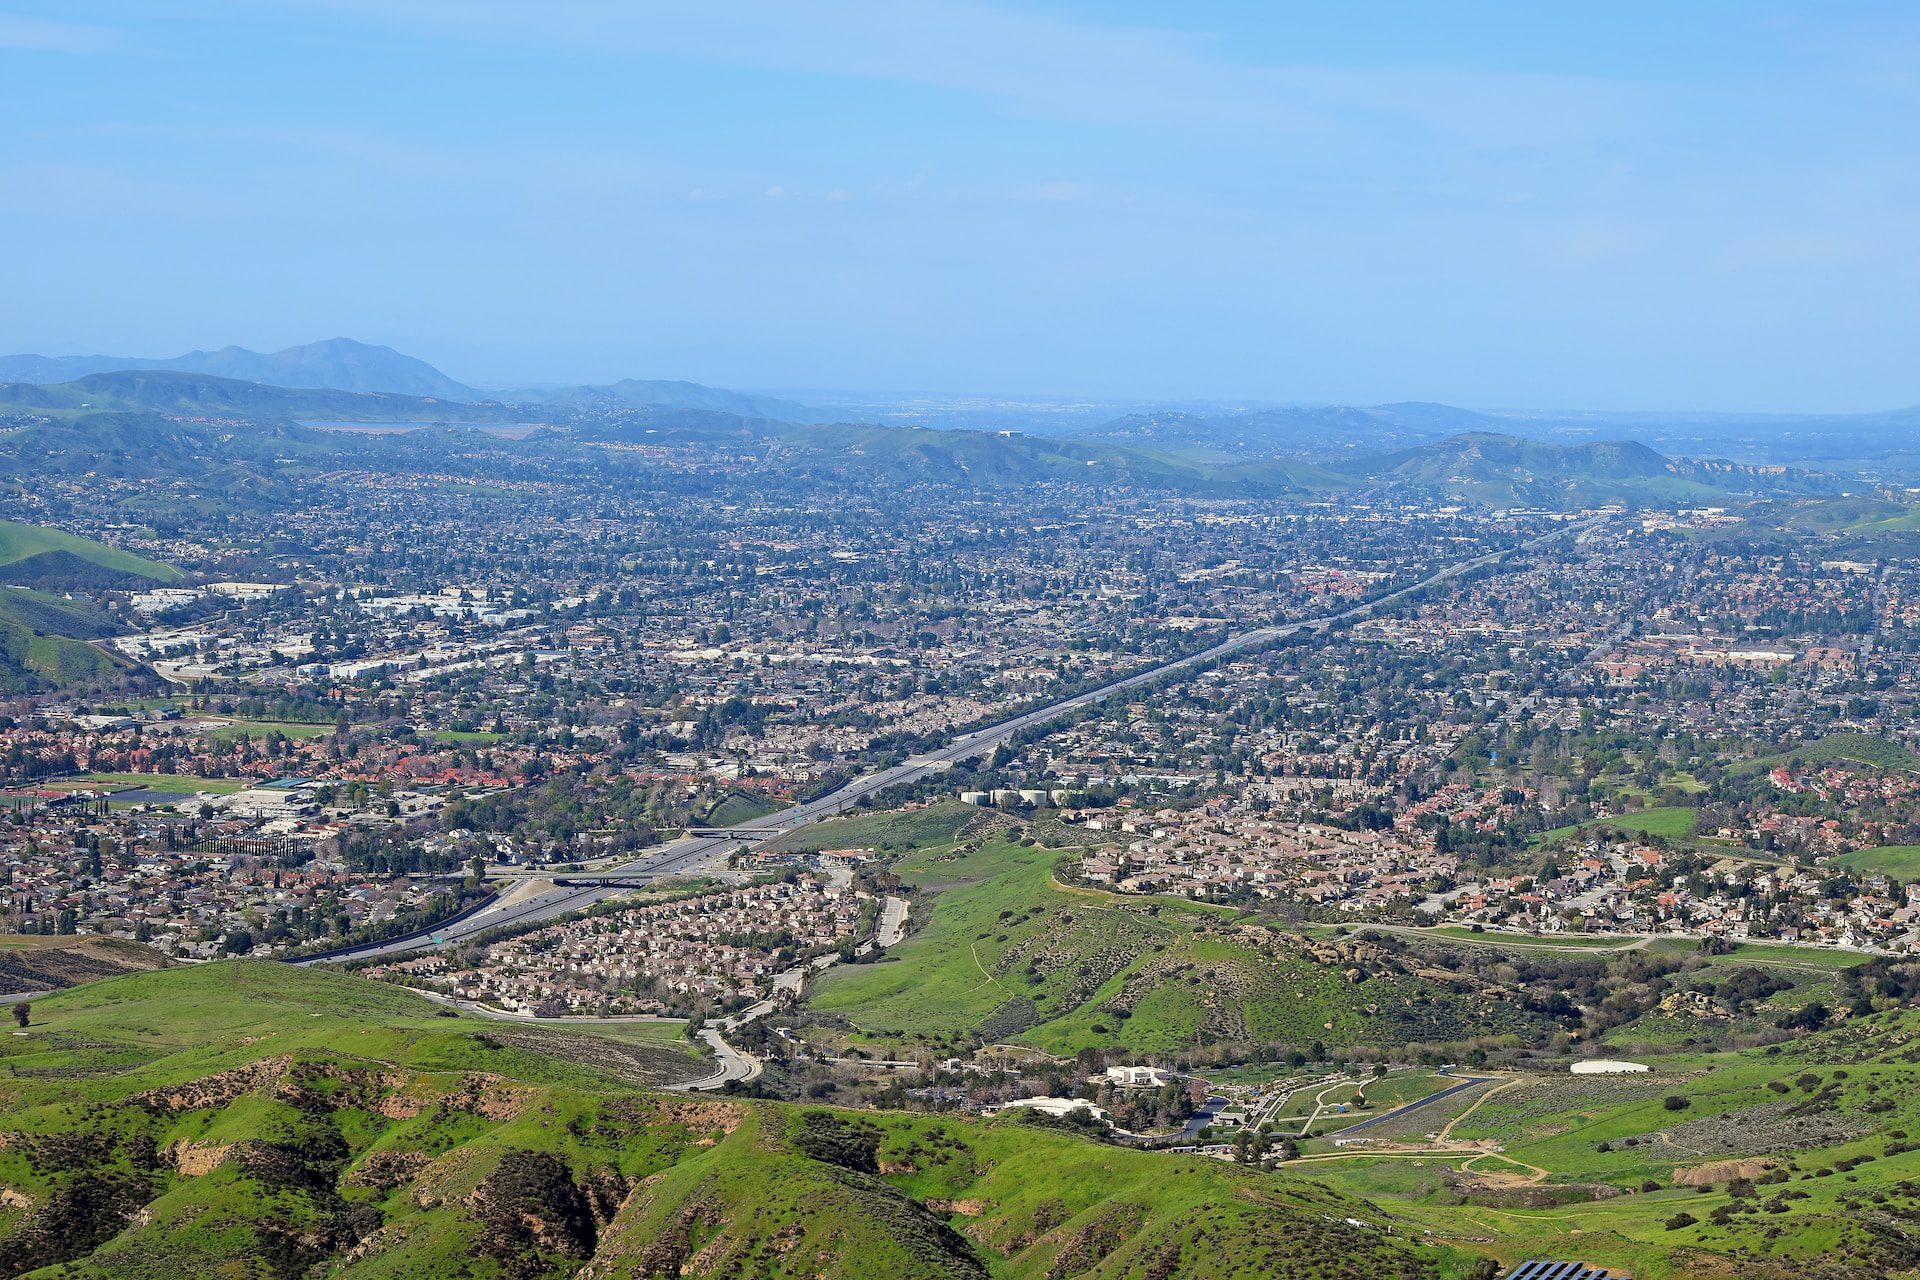 Cityscape of Simi Valley, California.